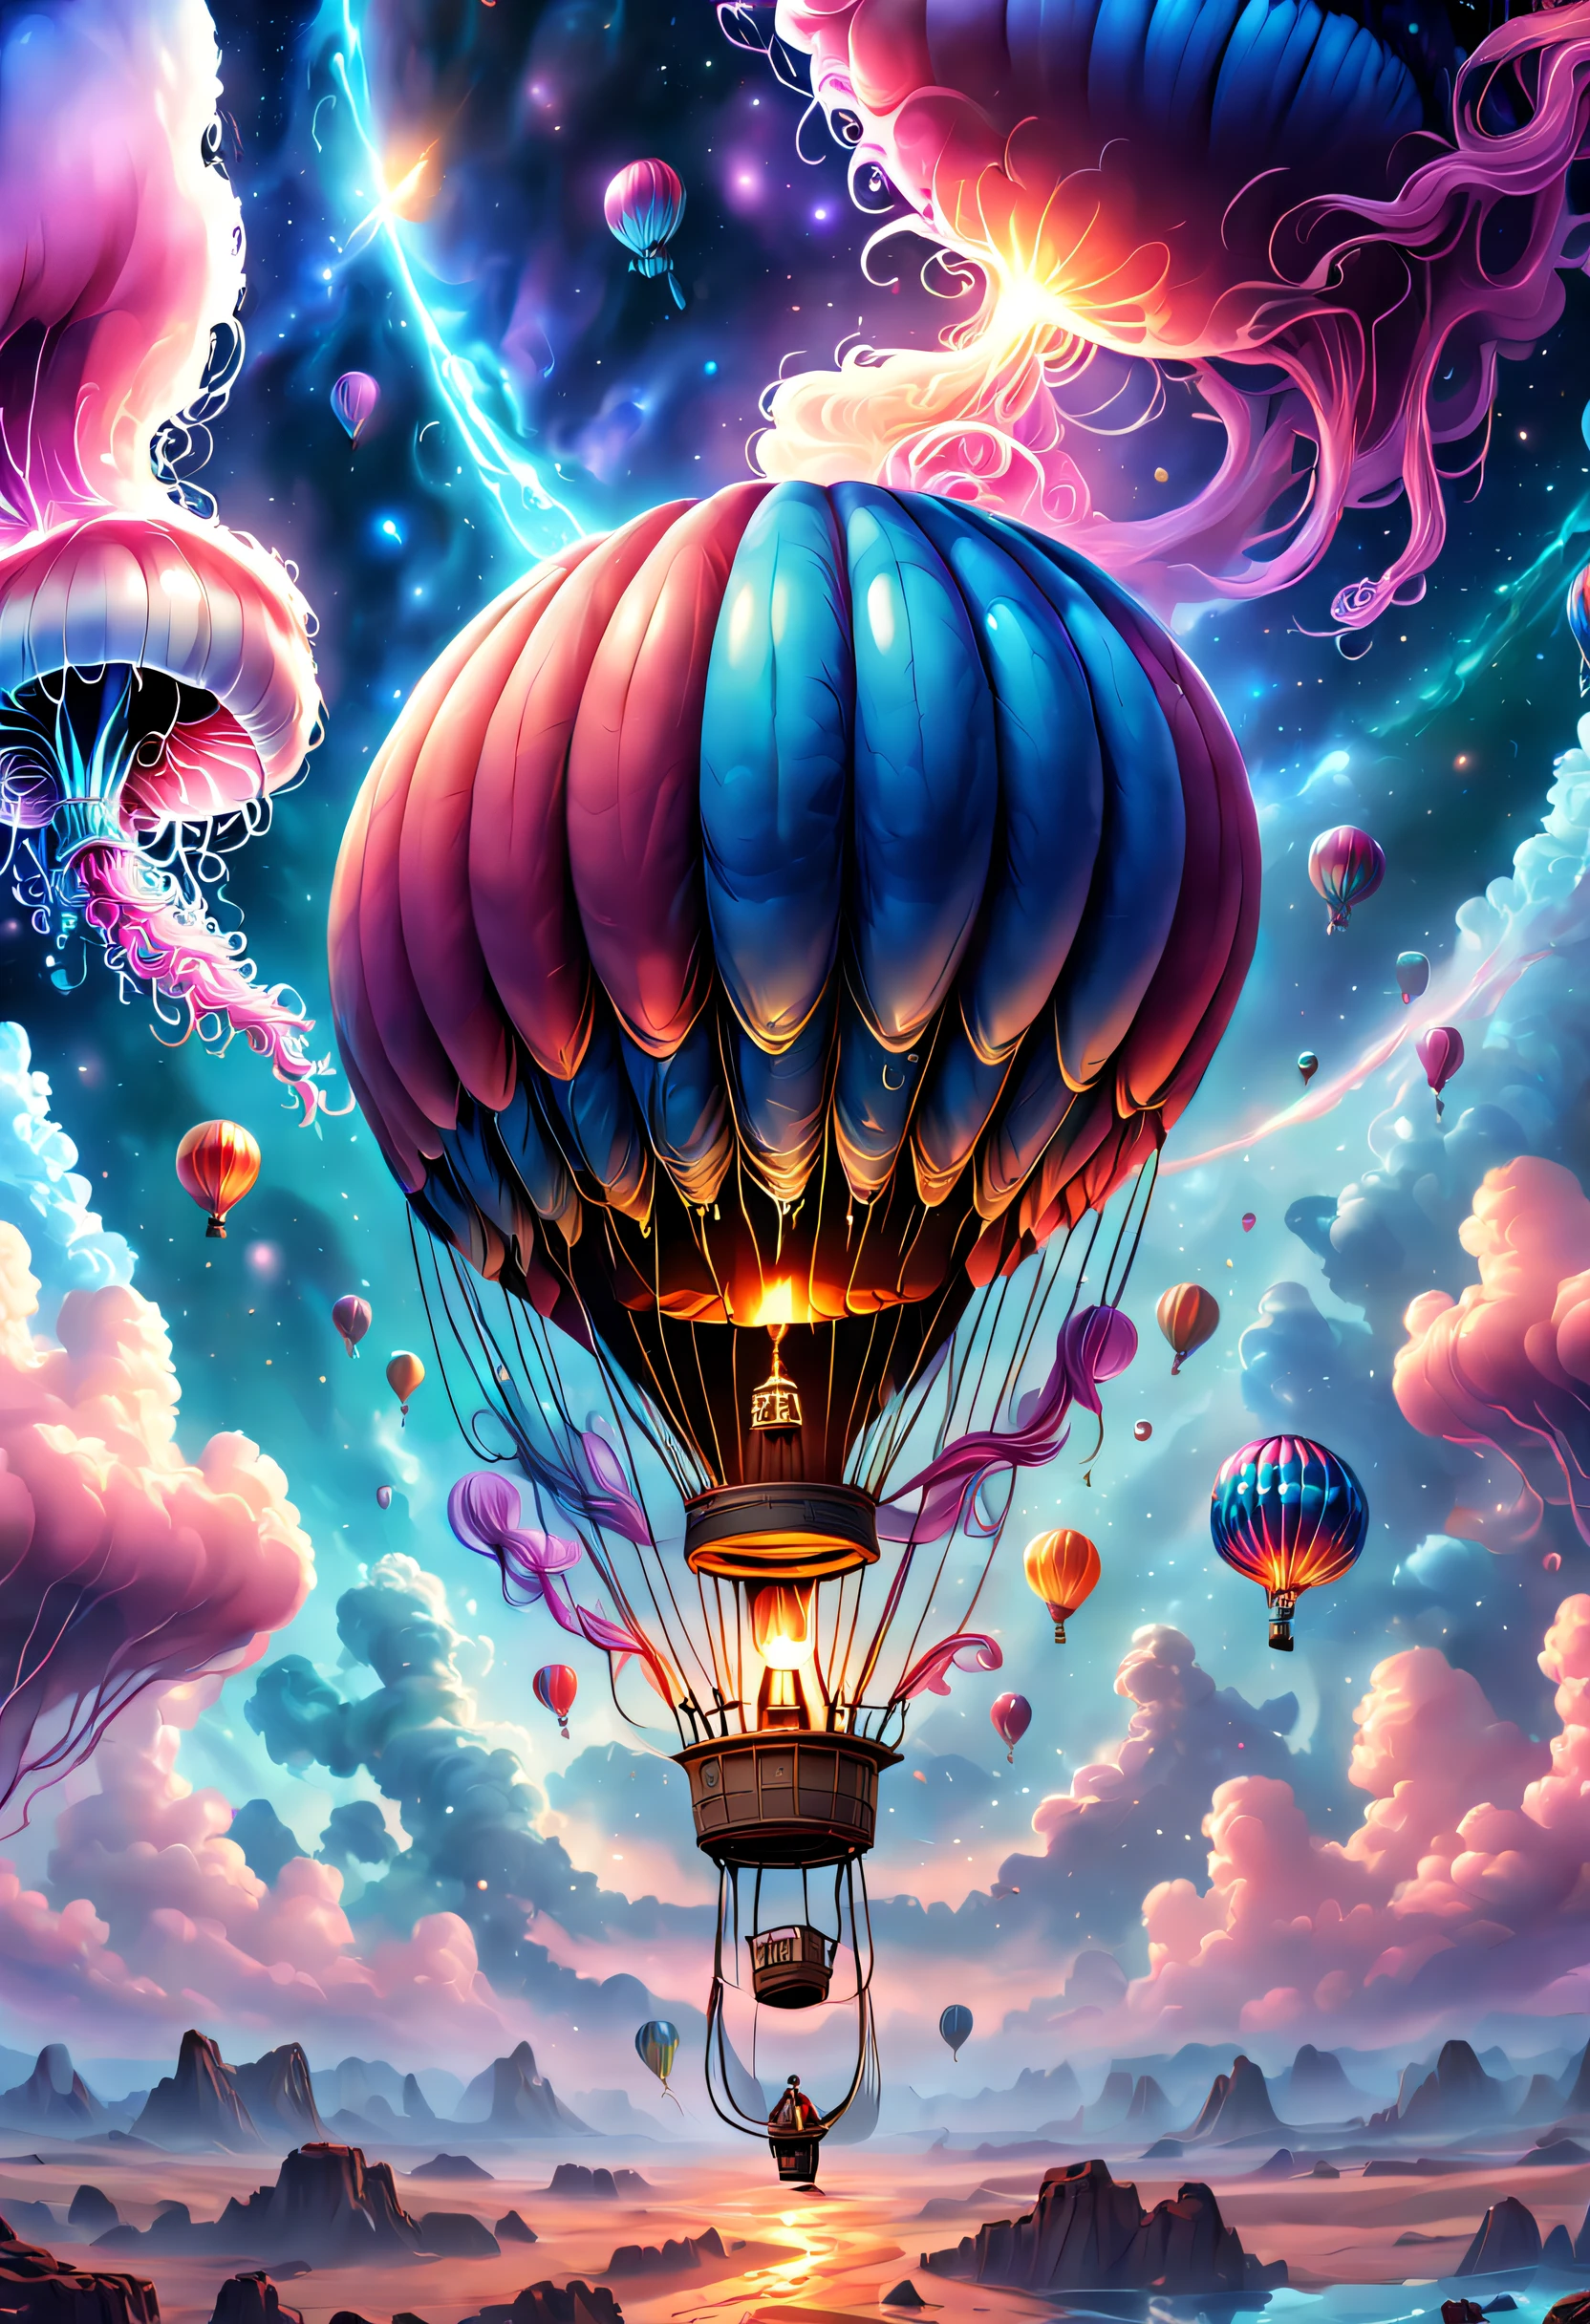 （（杰作，最好的品质）），精美的 8K 超高清专业照片, 清晰聚焦, 在一个令人惊叹的幻想世界中, 奇怪的热气球,丰富多彩的,可爱水母形状的热气球，在云里,美丽的天空,超现实主义,史诗般的梦想,童话世界,插图,高质量,3D 渲染,极其详细,真实感,鲜艳的色彩,令人惊叹的灯光，解剖正确，星际穿越，无尽空间，透明的，景深 精美空间图像场景